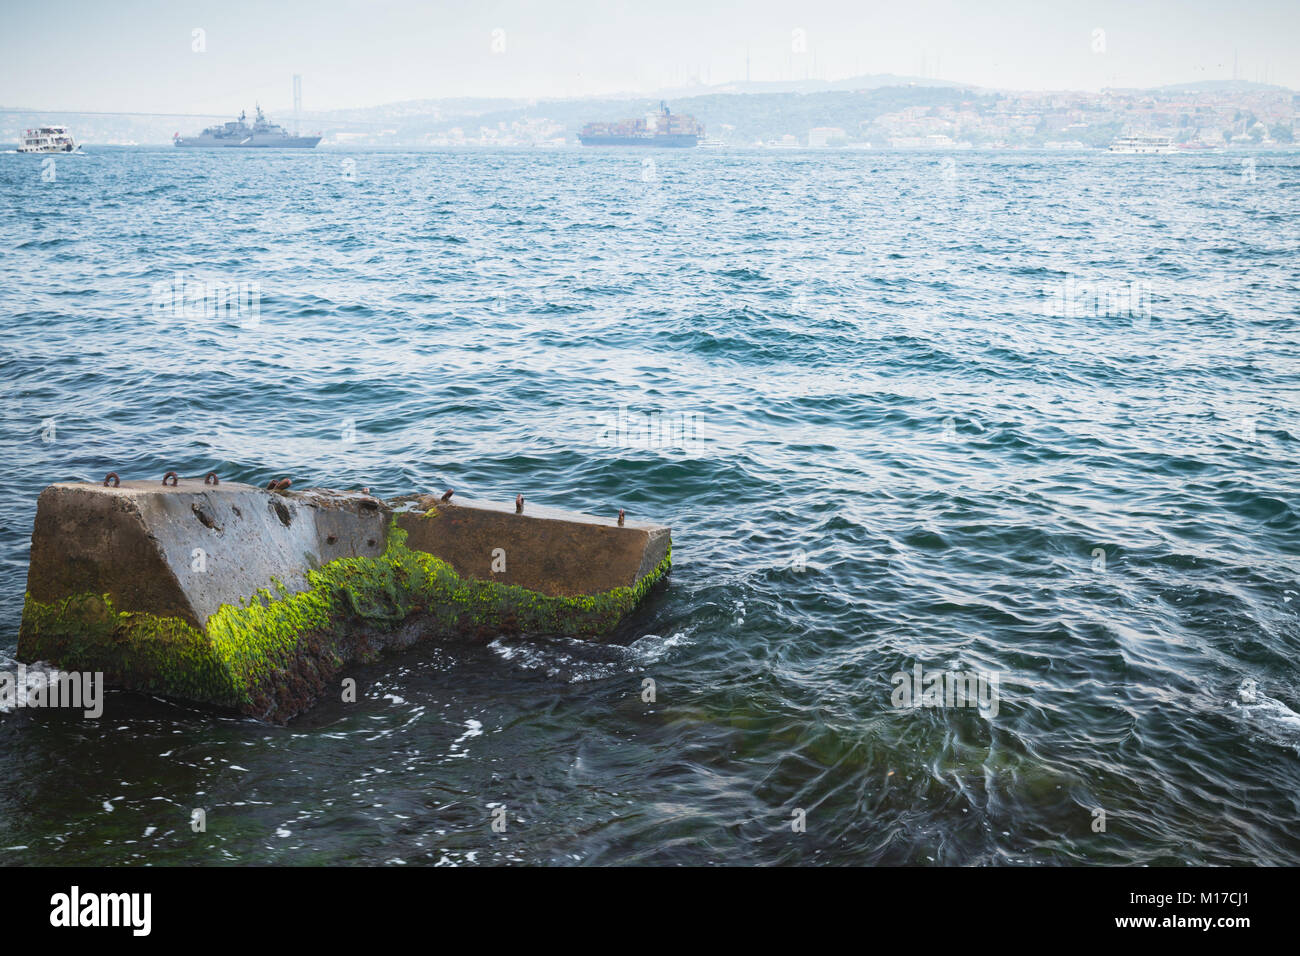 Rotture di molo di cemento con alghe verdi, il paesaggio costiero del Bosforo stretto Foto Stock